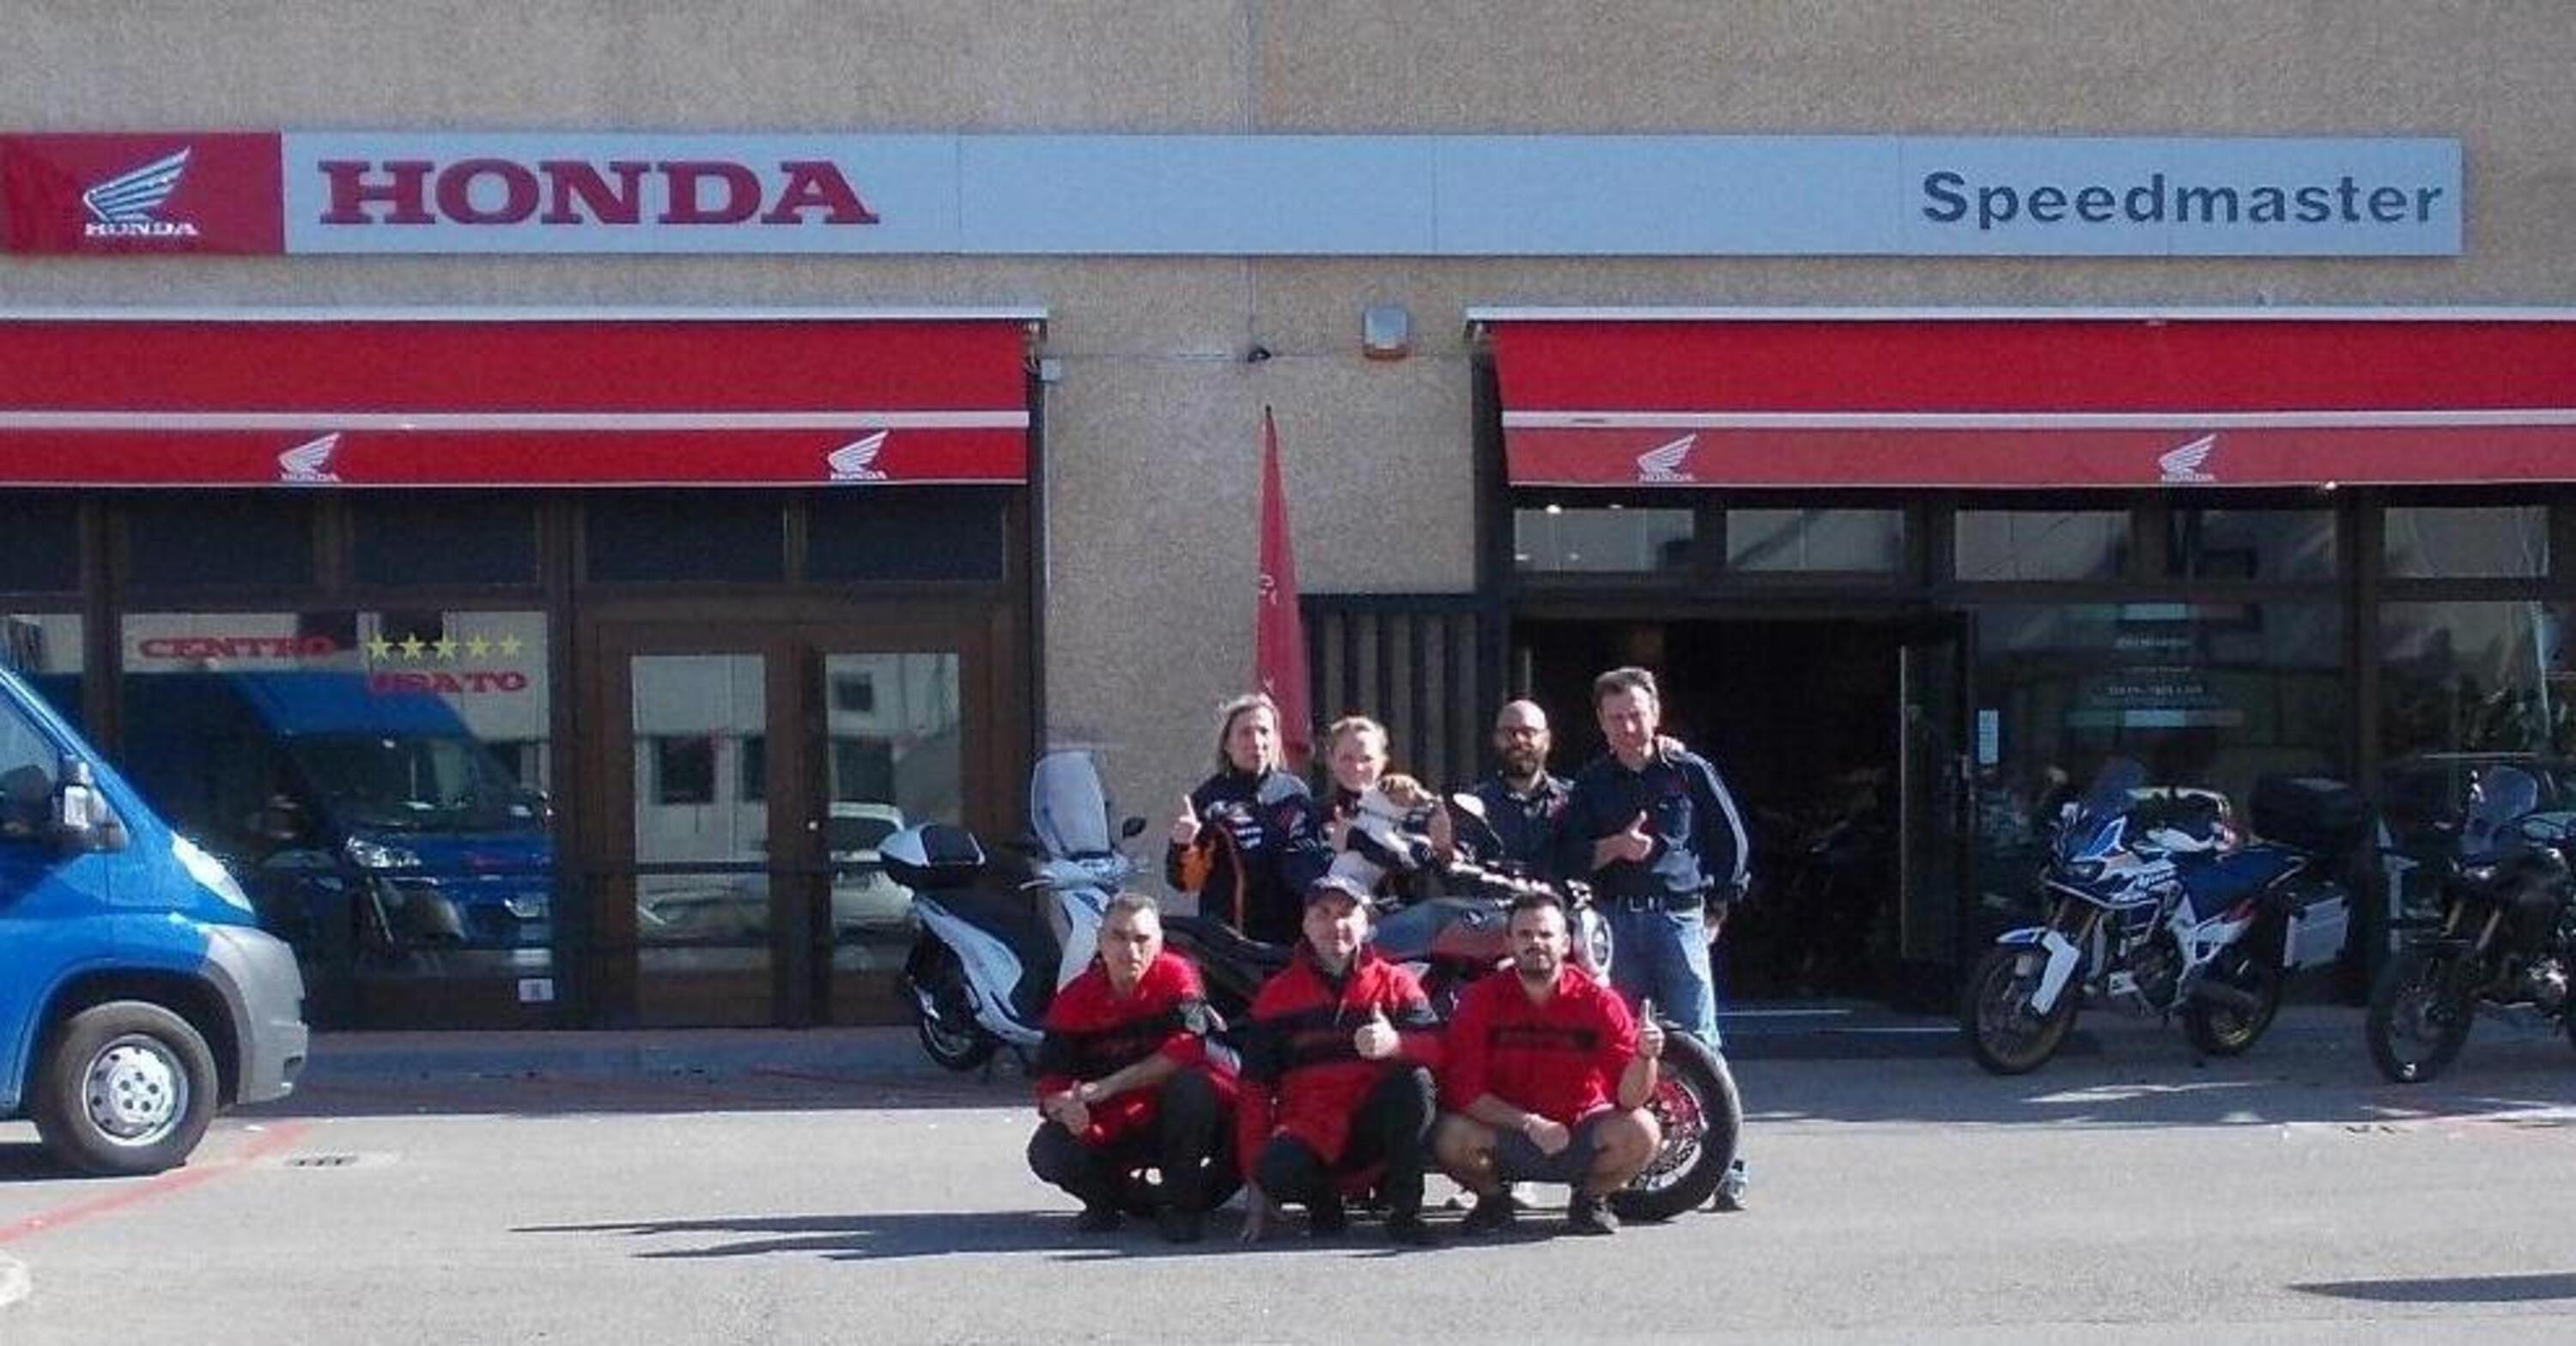 Speedmaster Arezzo: 10 anni di passione con Honda 